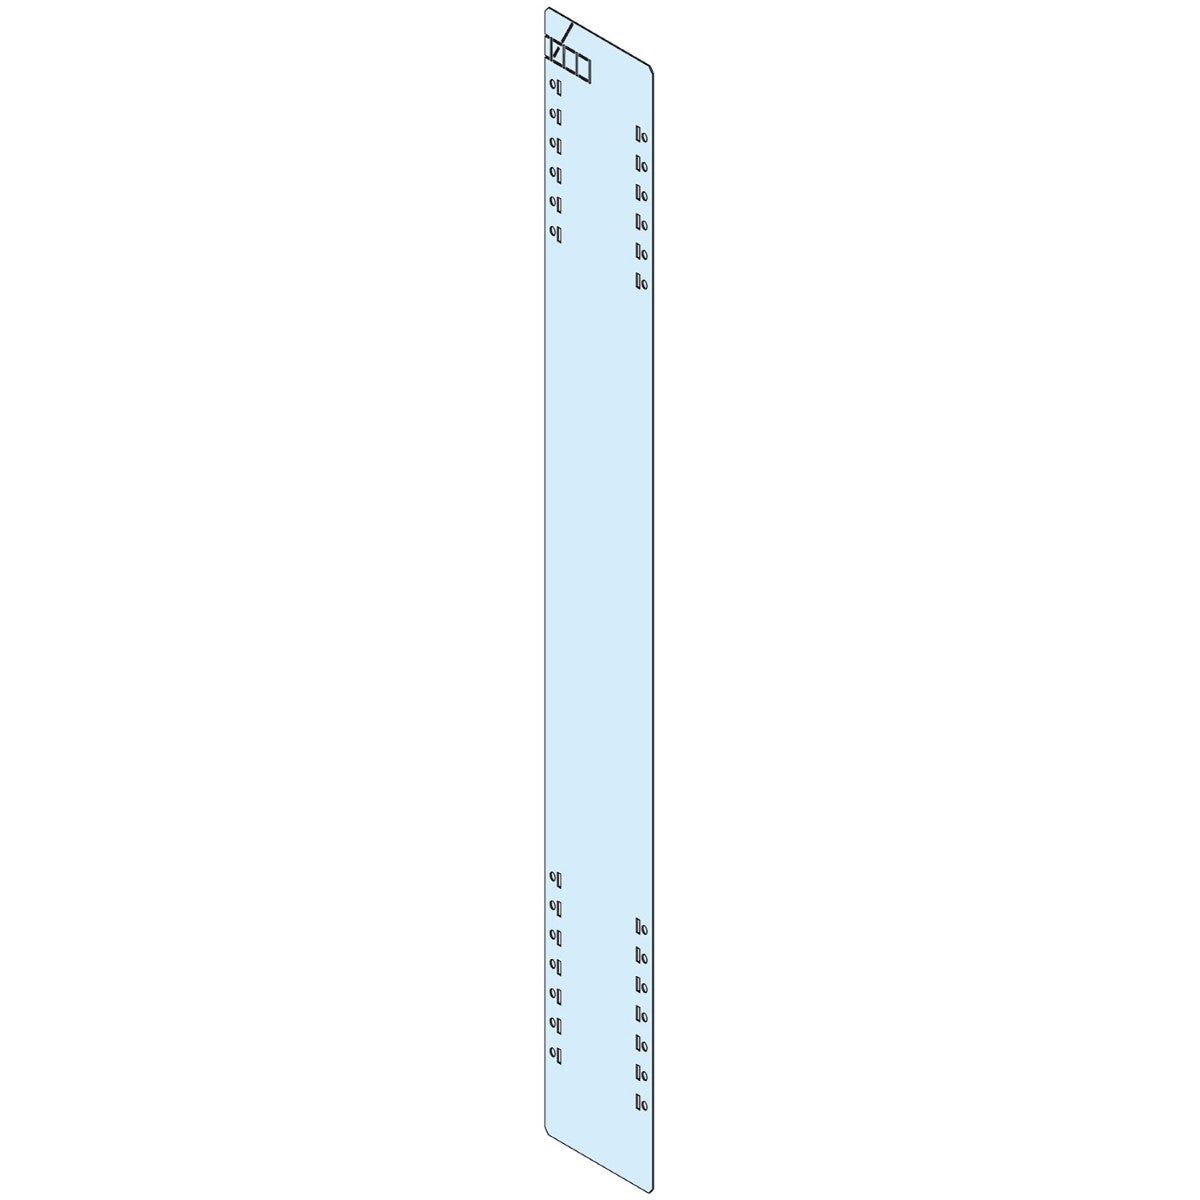 Inter cubicle partition, PrismaSeT P, 2 panels H 850mm W 150mm, for 2 adjacent cubicles D600